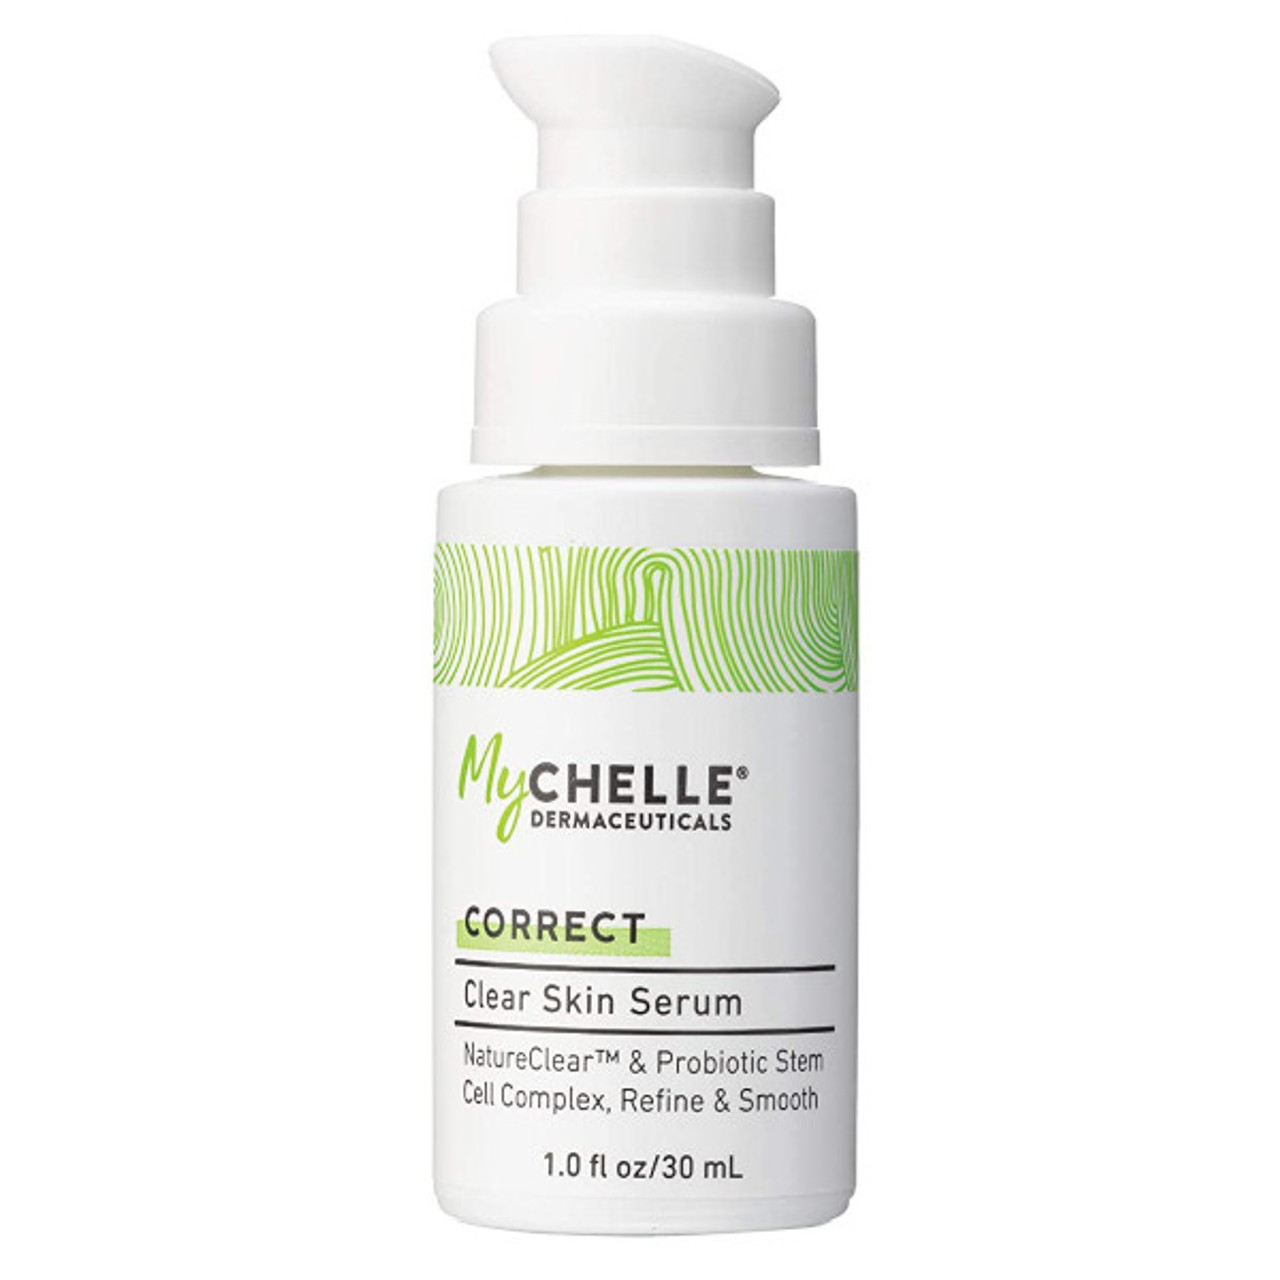 Mychelle Dermaceuticals Clear Skin Serum - 1 oz